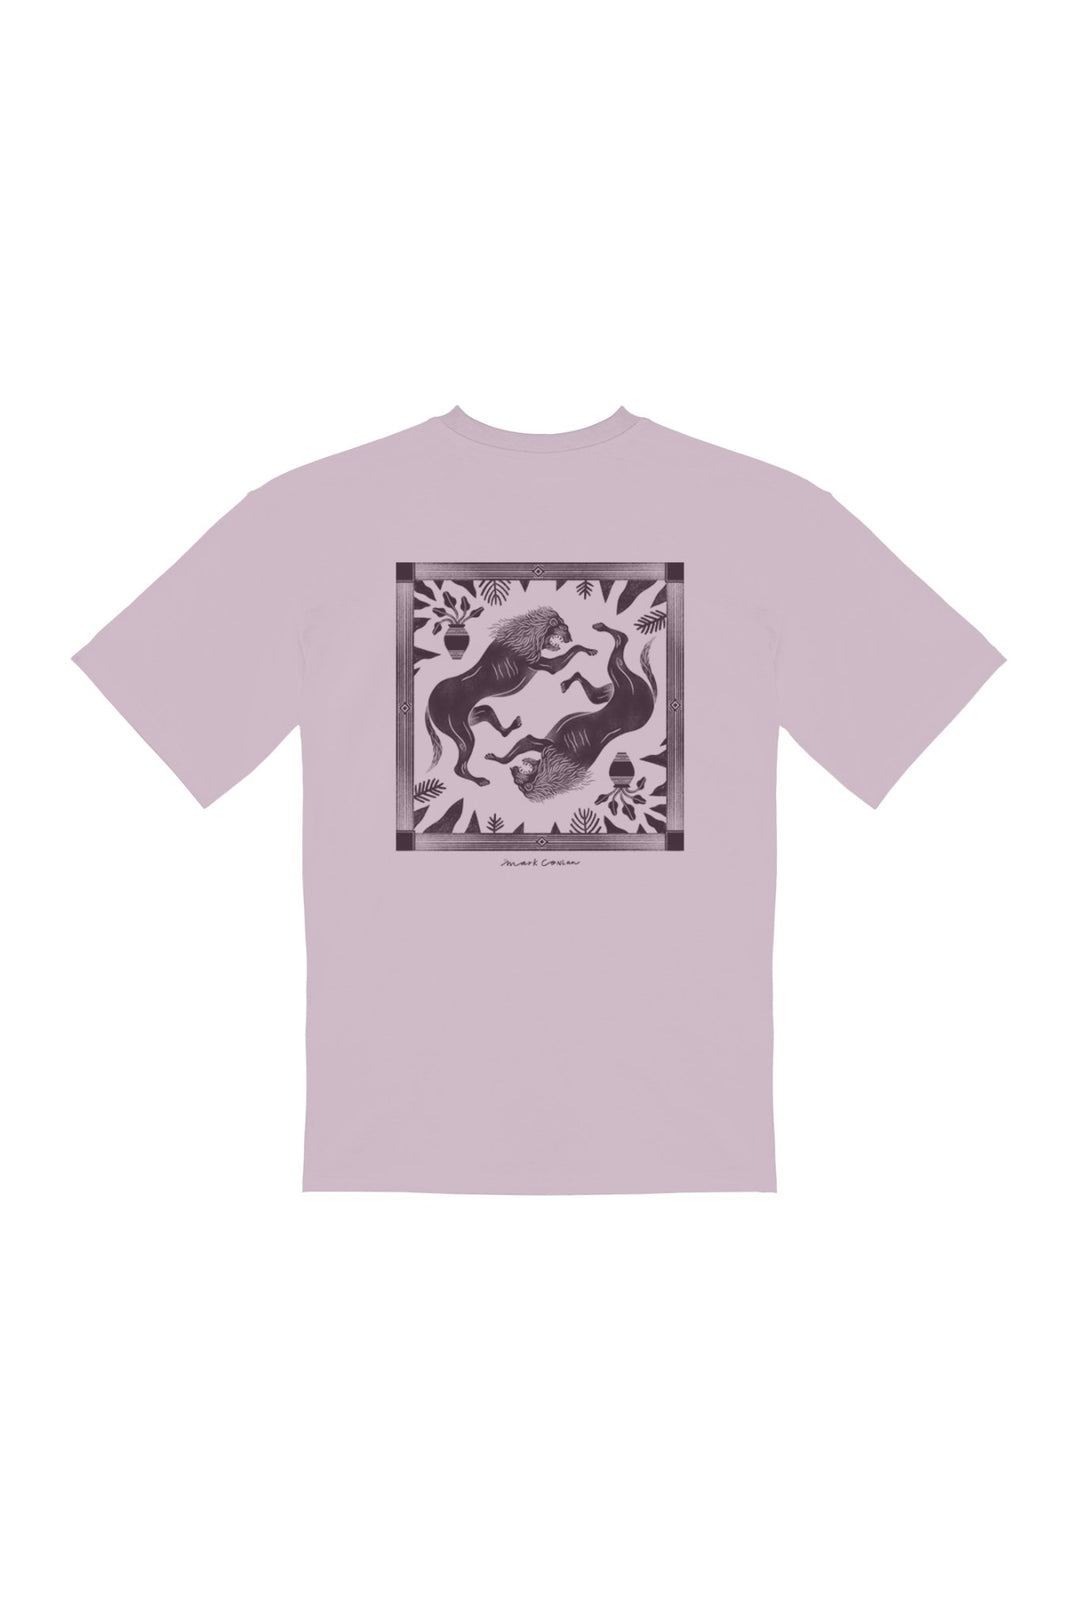 NÉMÉE・T - shirt unisexe・Rose - Le Cartel